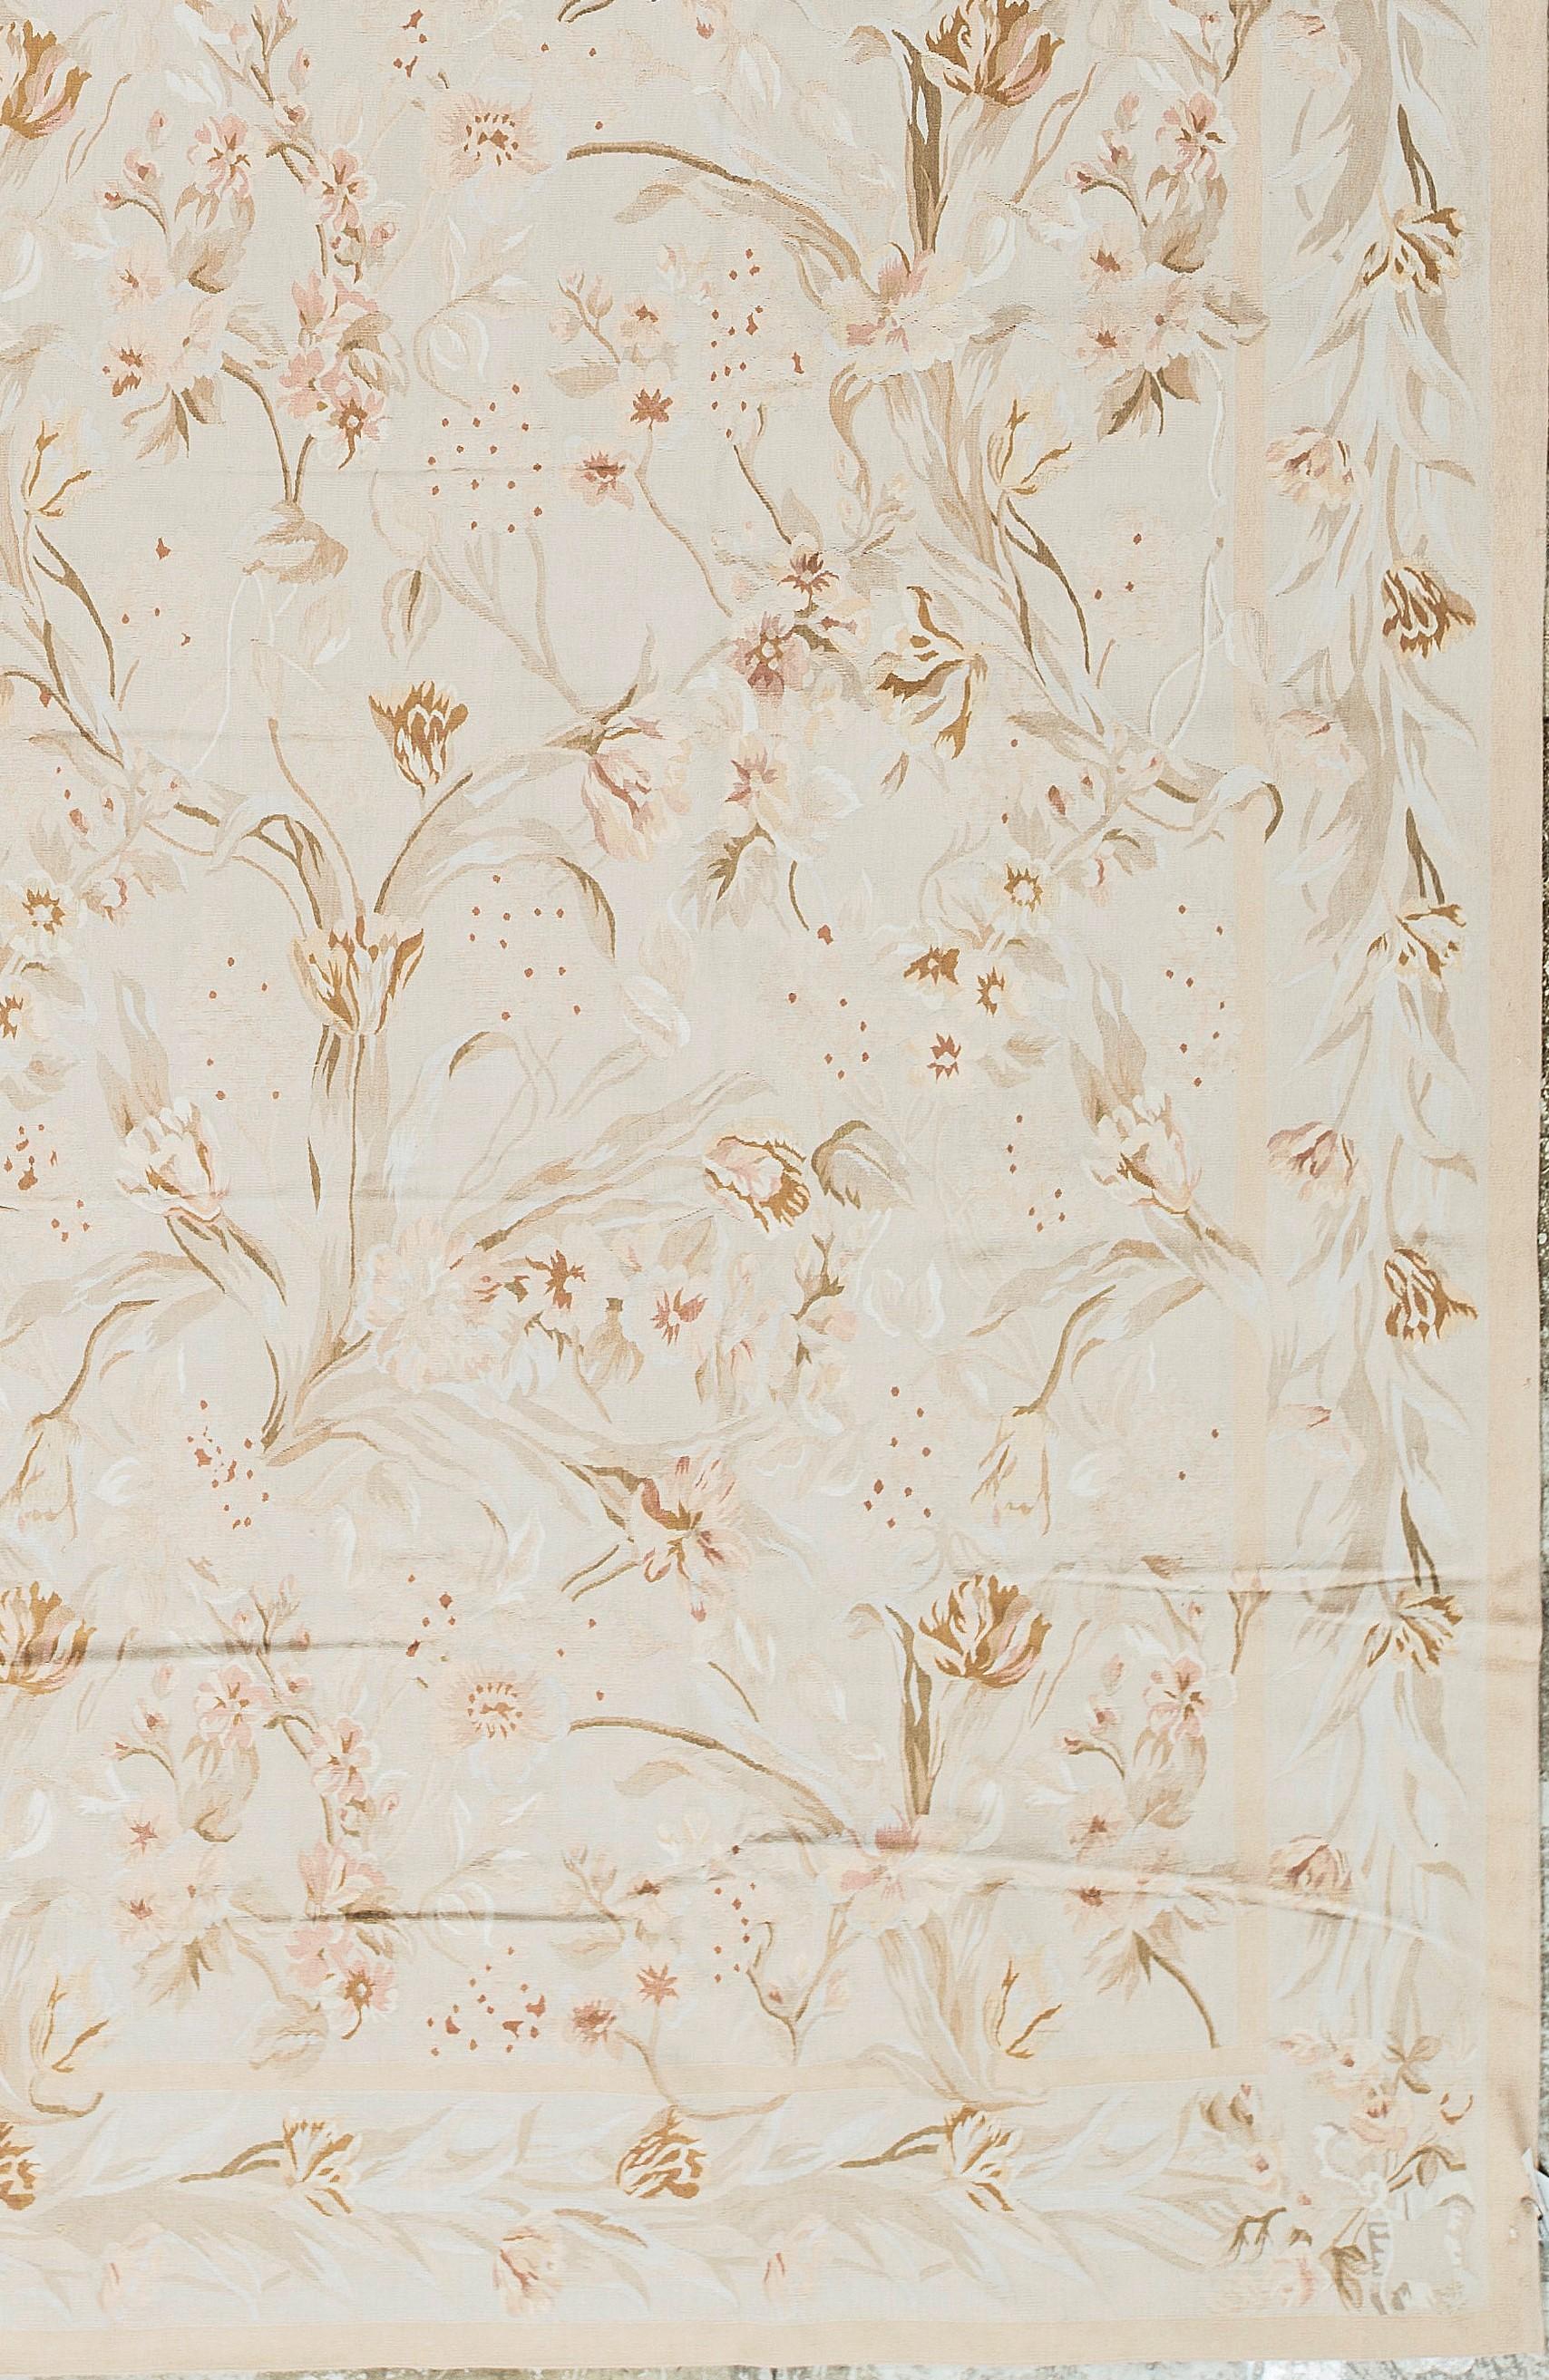 Recréation tissée à la main des tapis d'Aubusson classiques français à tissage plat que l'on trouve dans les maisons et les palais les plus raffinés depuis la fin du XVIIe siècle. Taille : 11' 10